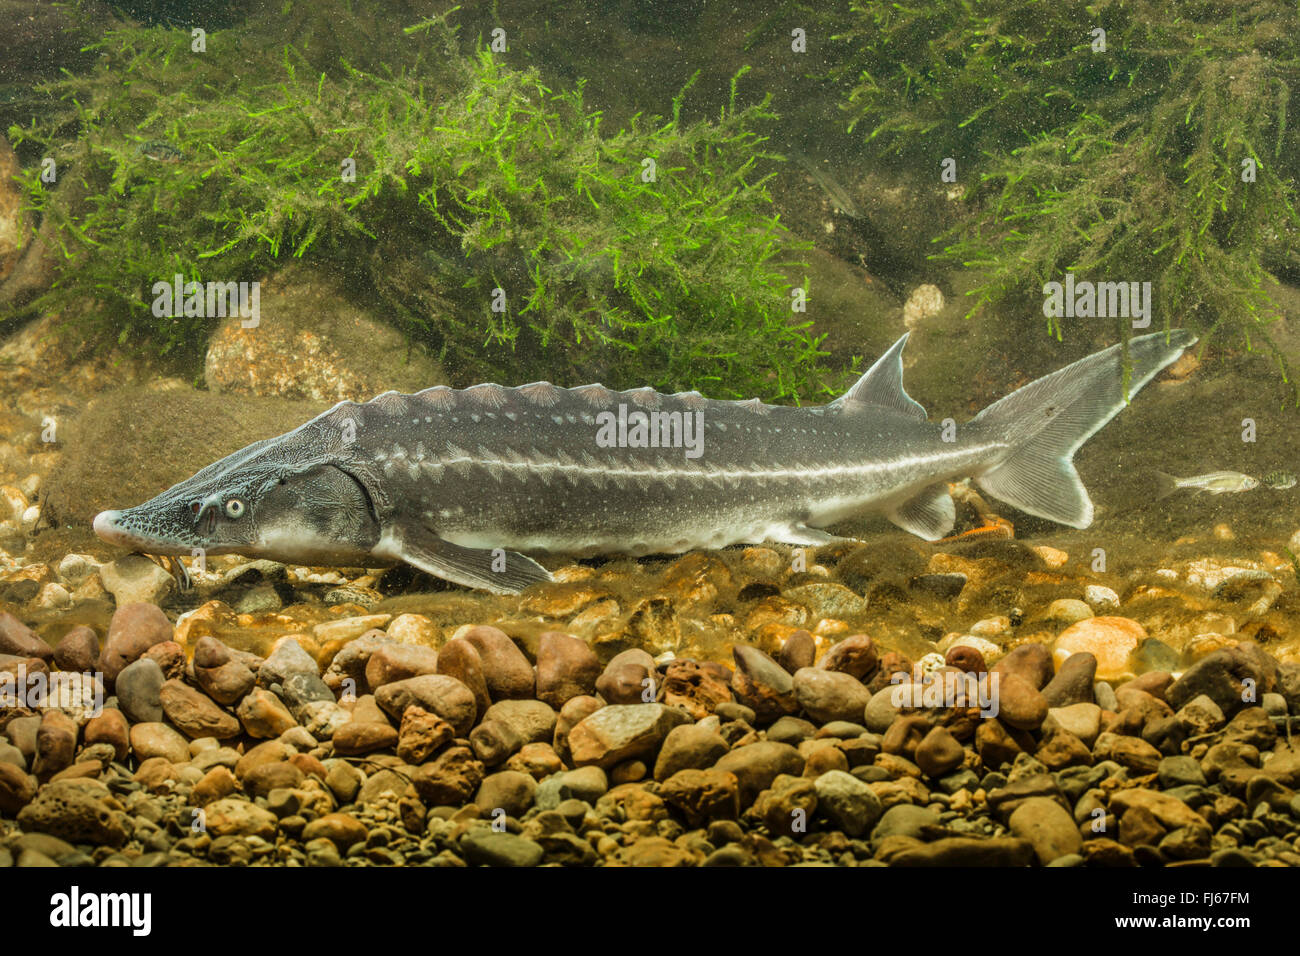 Russian sturgeon (Acipenser gueldenstaedtii, Acipenser gueldenstaedti), swimming, underwater photo Stock Photo